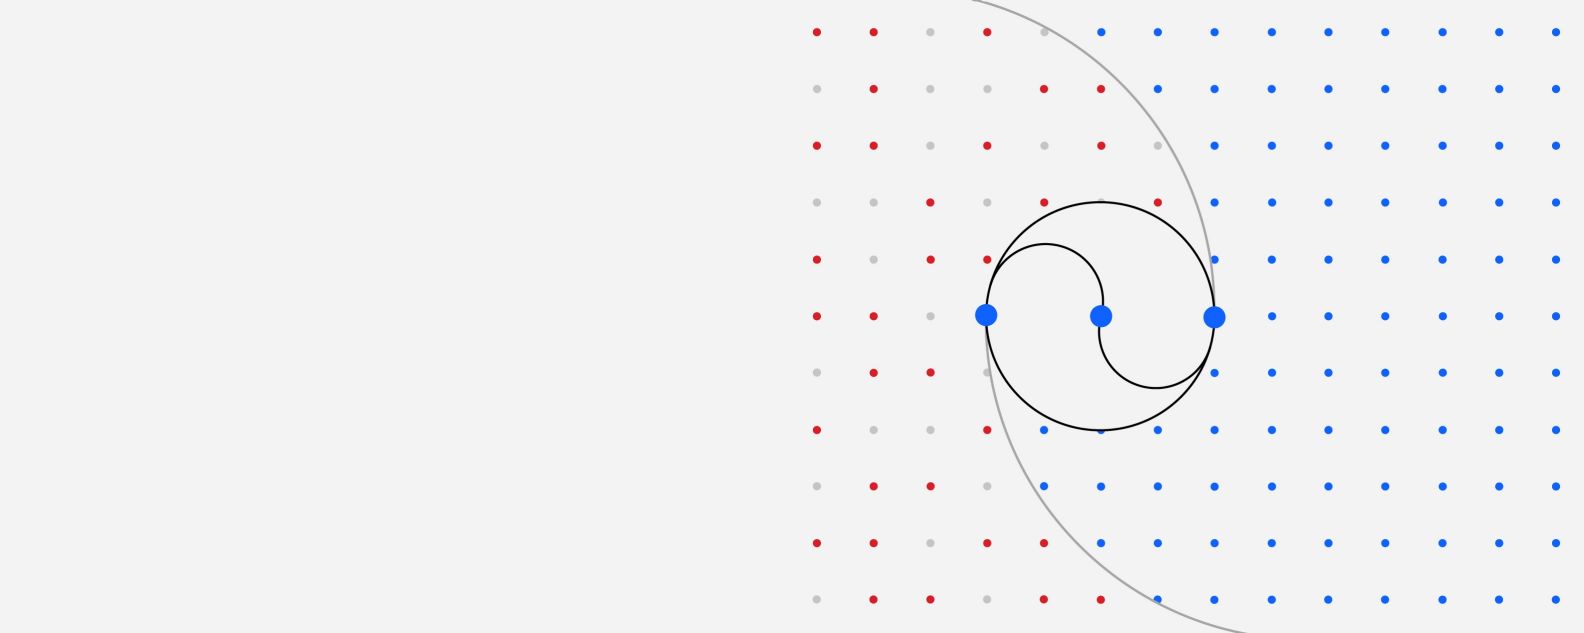 Illustration en forme de grille de points colorés où trois points plus grands sont reliés par plusieurs lignes courbes